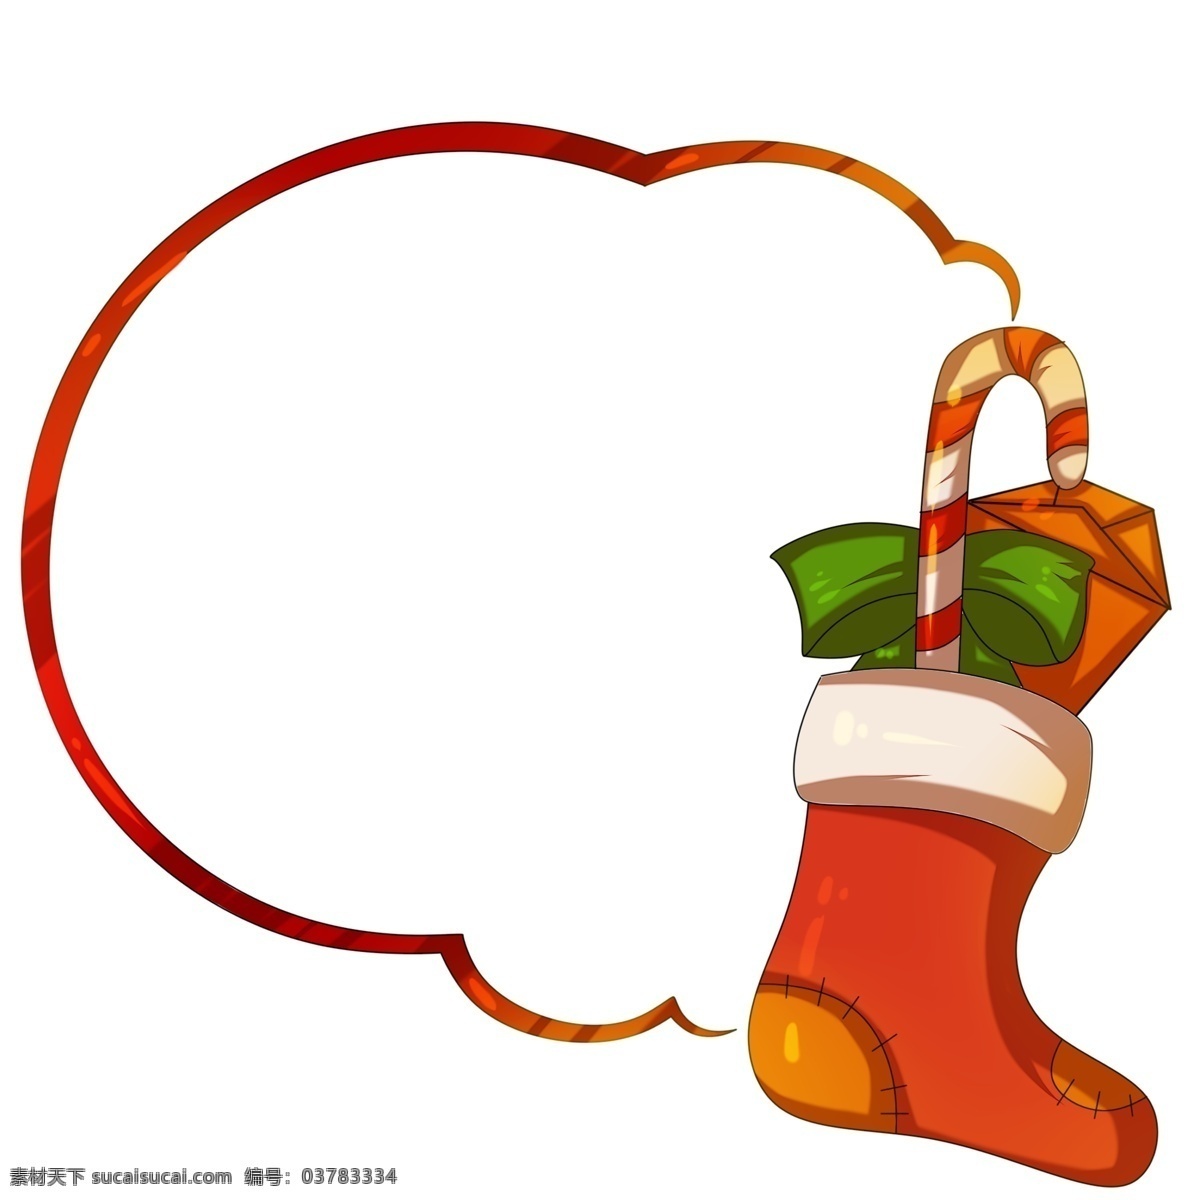 圣诞节 袜子 糖果 边框 圣诞节边框 手绘边框 唯美边框 边框插画 手绘唯美边框 绿色的蝴蝶结 袜子边框